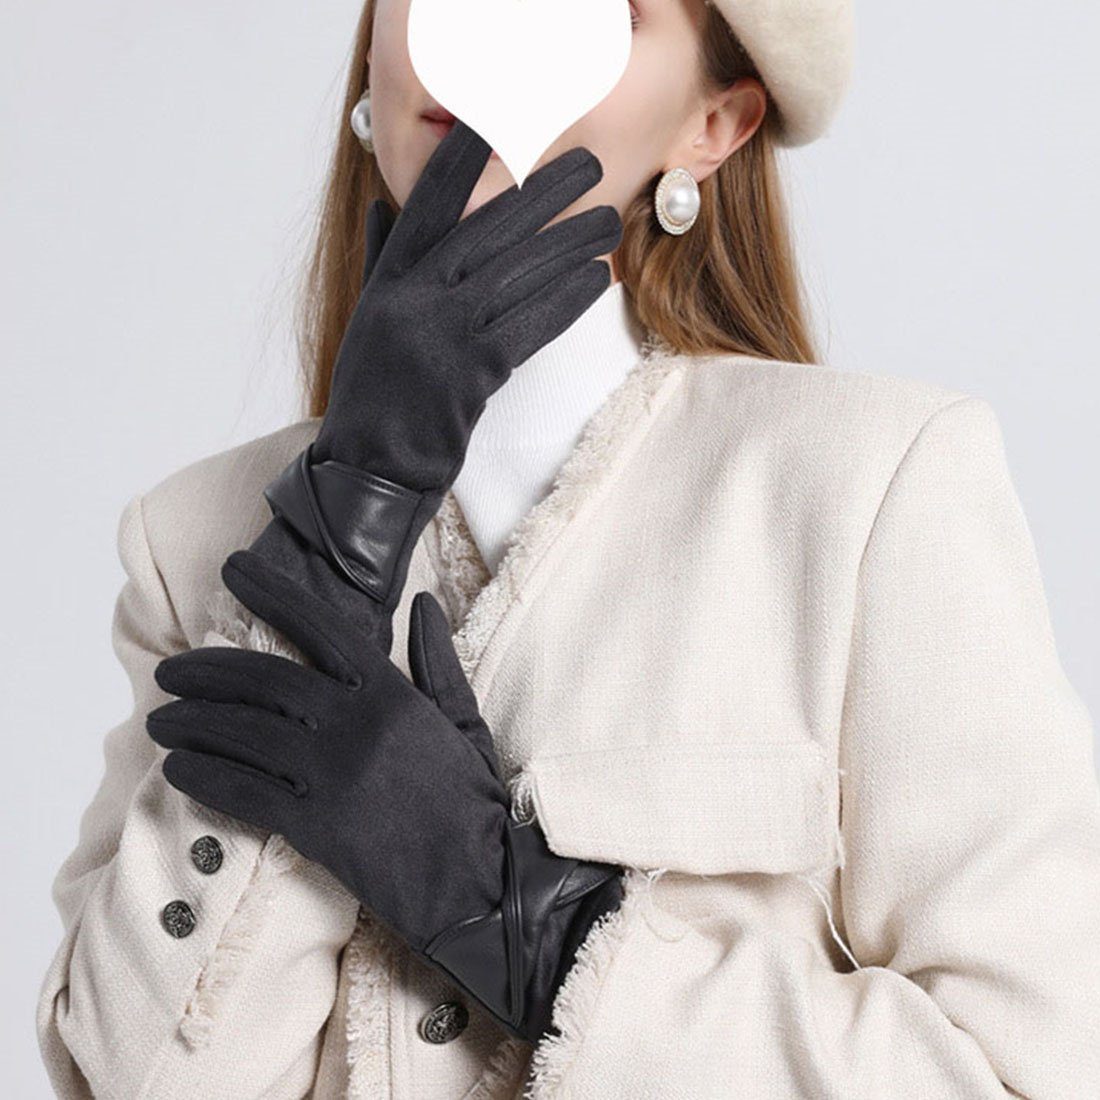 DÖRÖY Fleecehandschuhe Gepolsterte warme Damenhandschuhe, Handschuhe mit berührbarer Schleife dunkelgrau